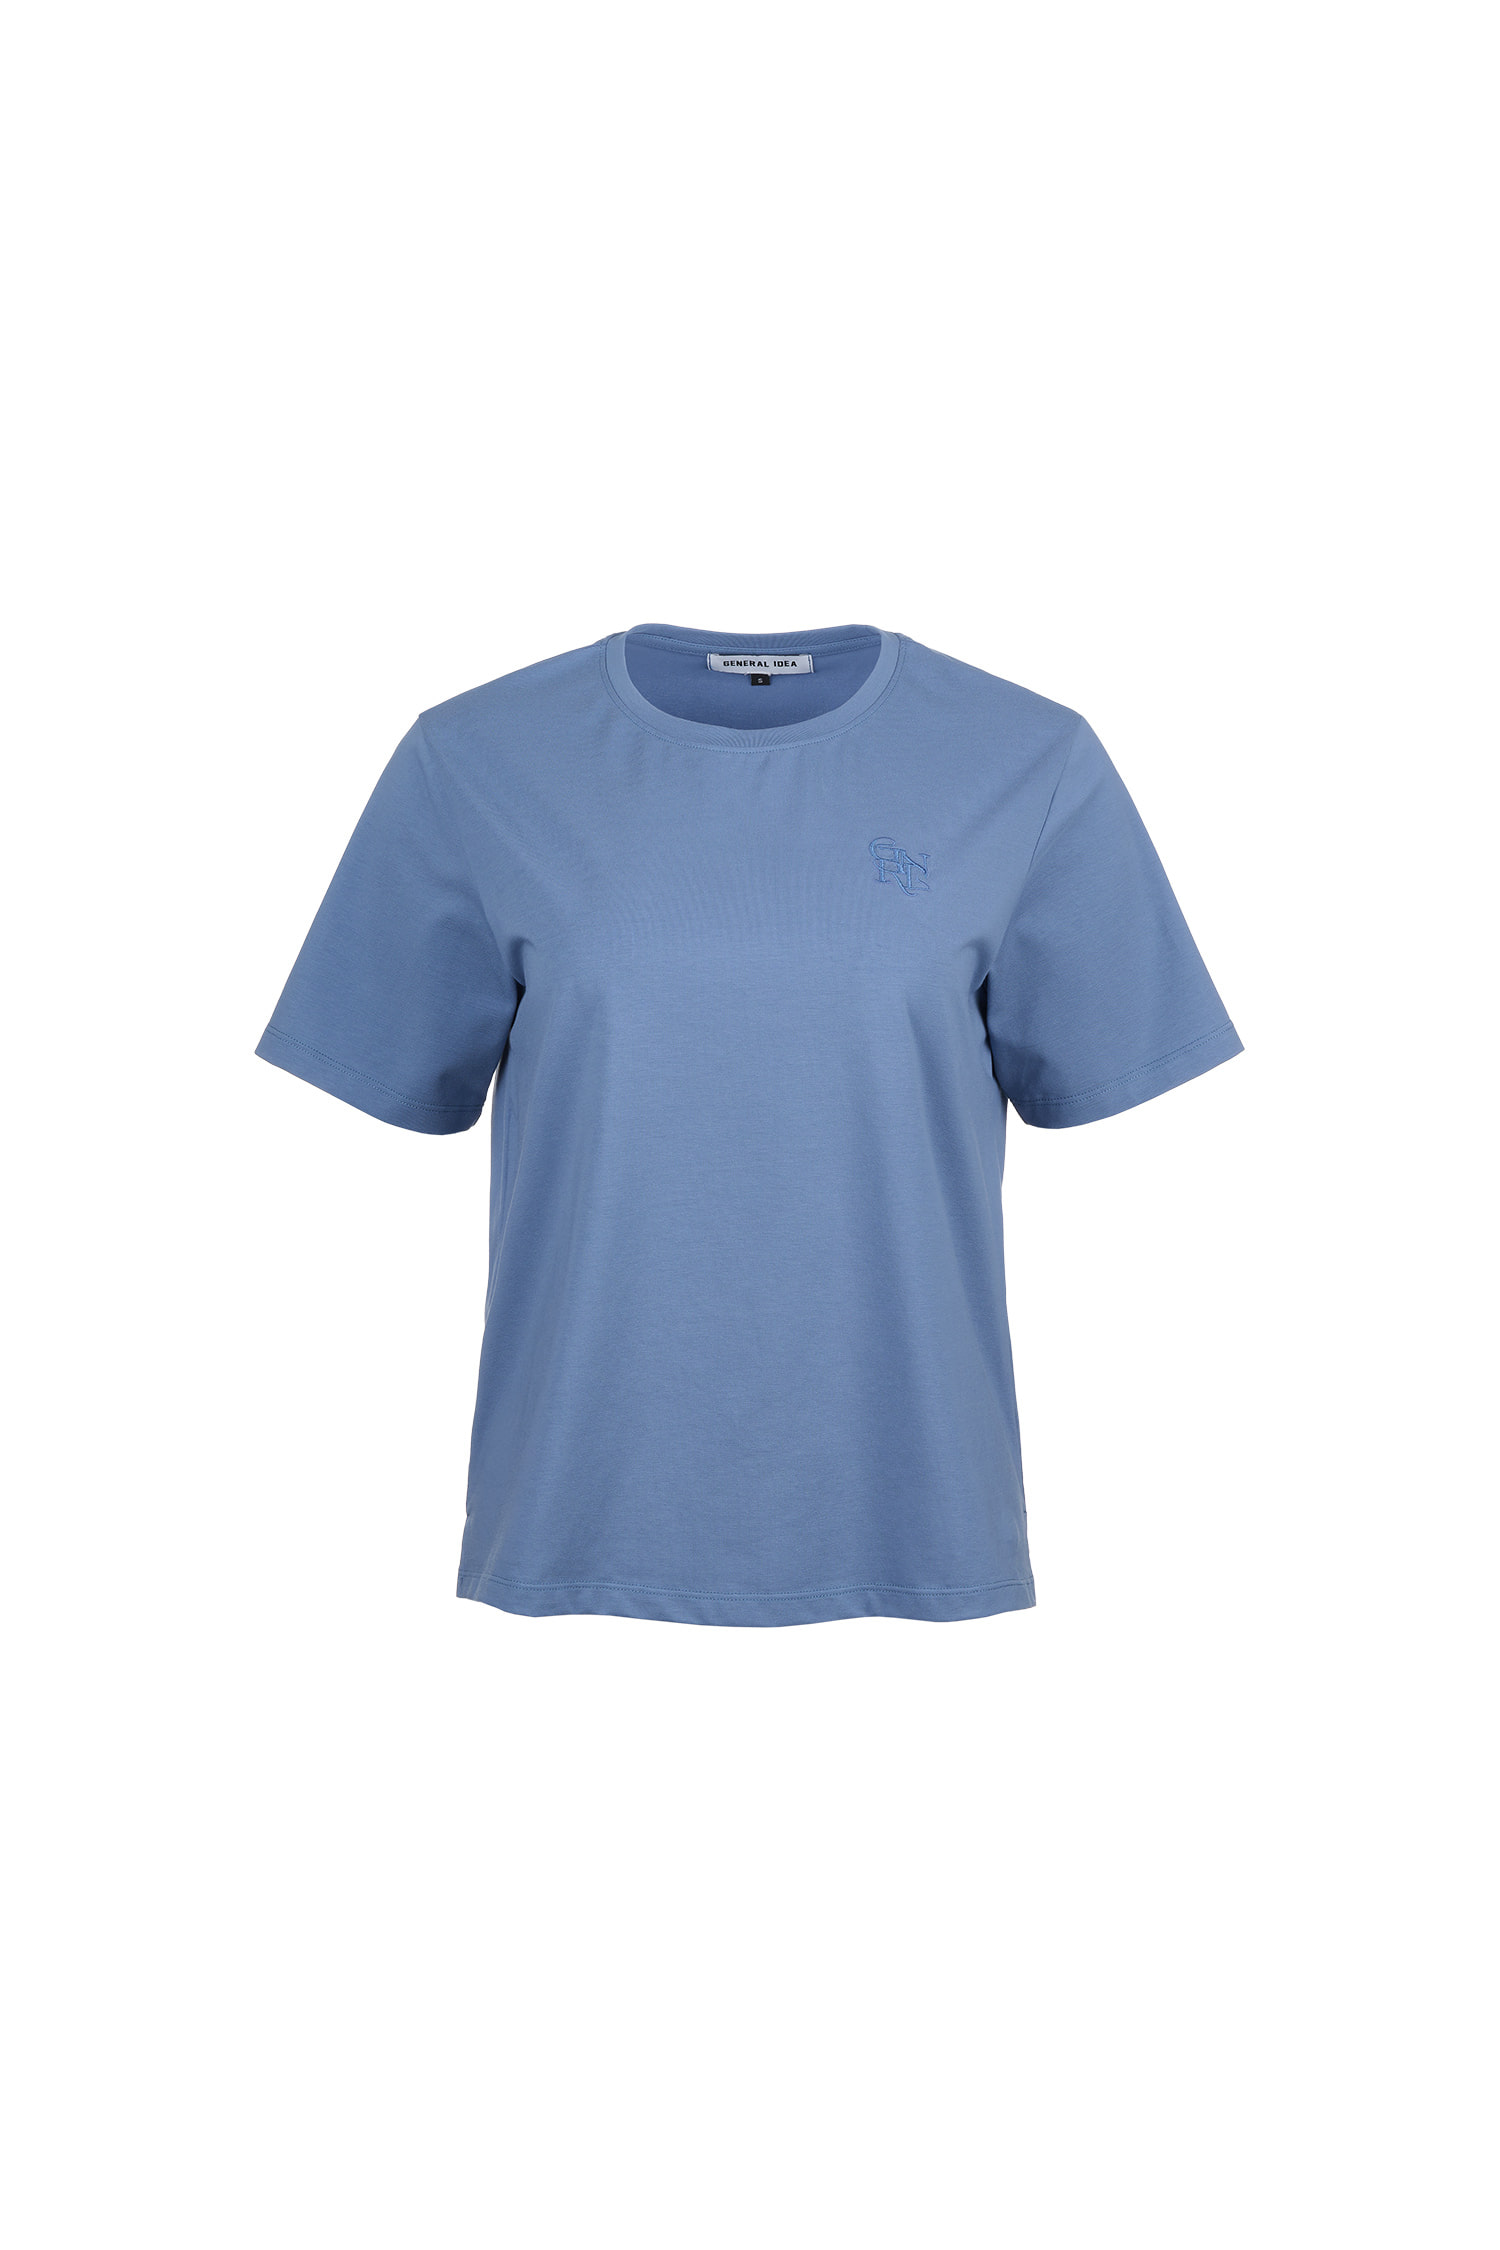 WOMAN GNRL 실켓 스판 티셔츠 [BLUE]